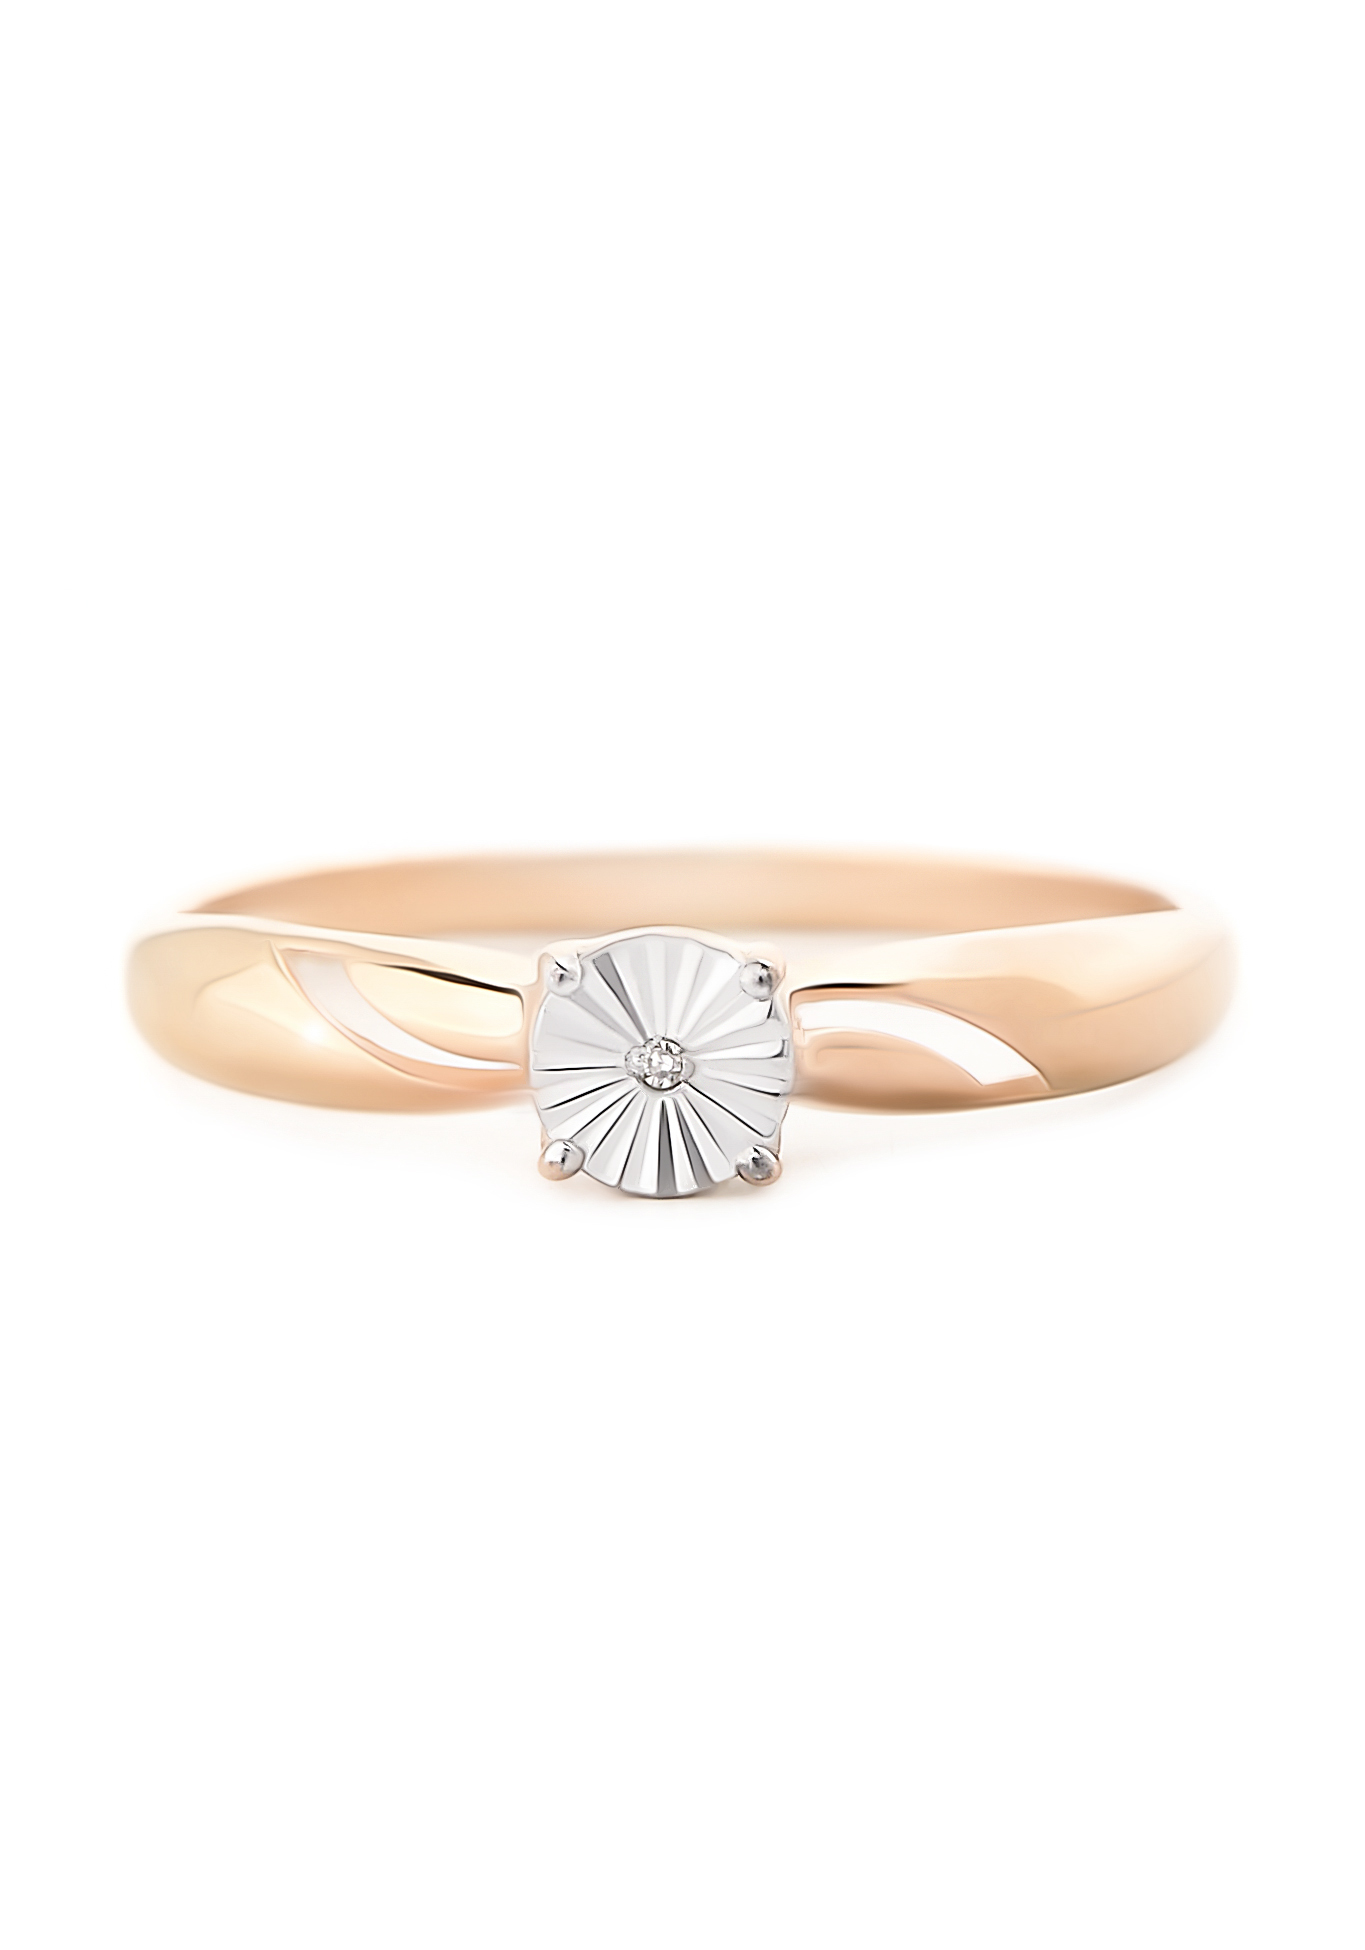 Серебряное кольцо «Элиана» Nouvelle, размер 17 солитер - фото 2